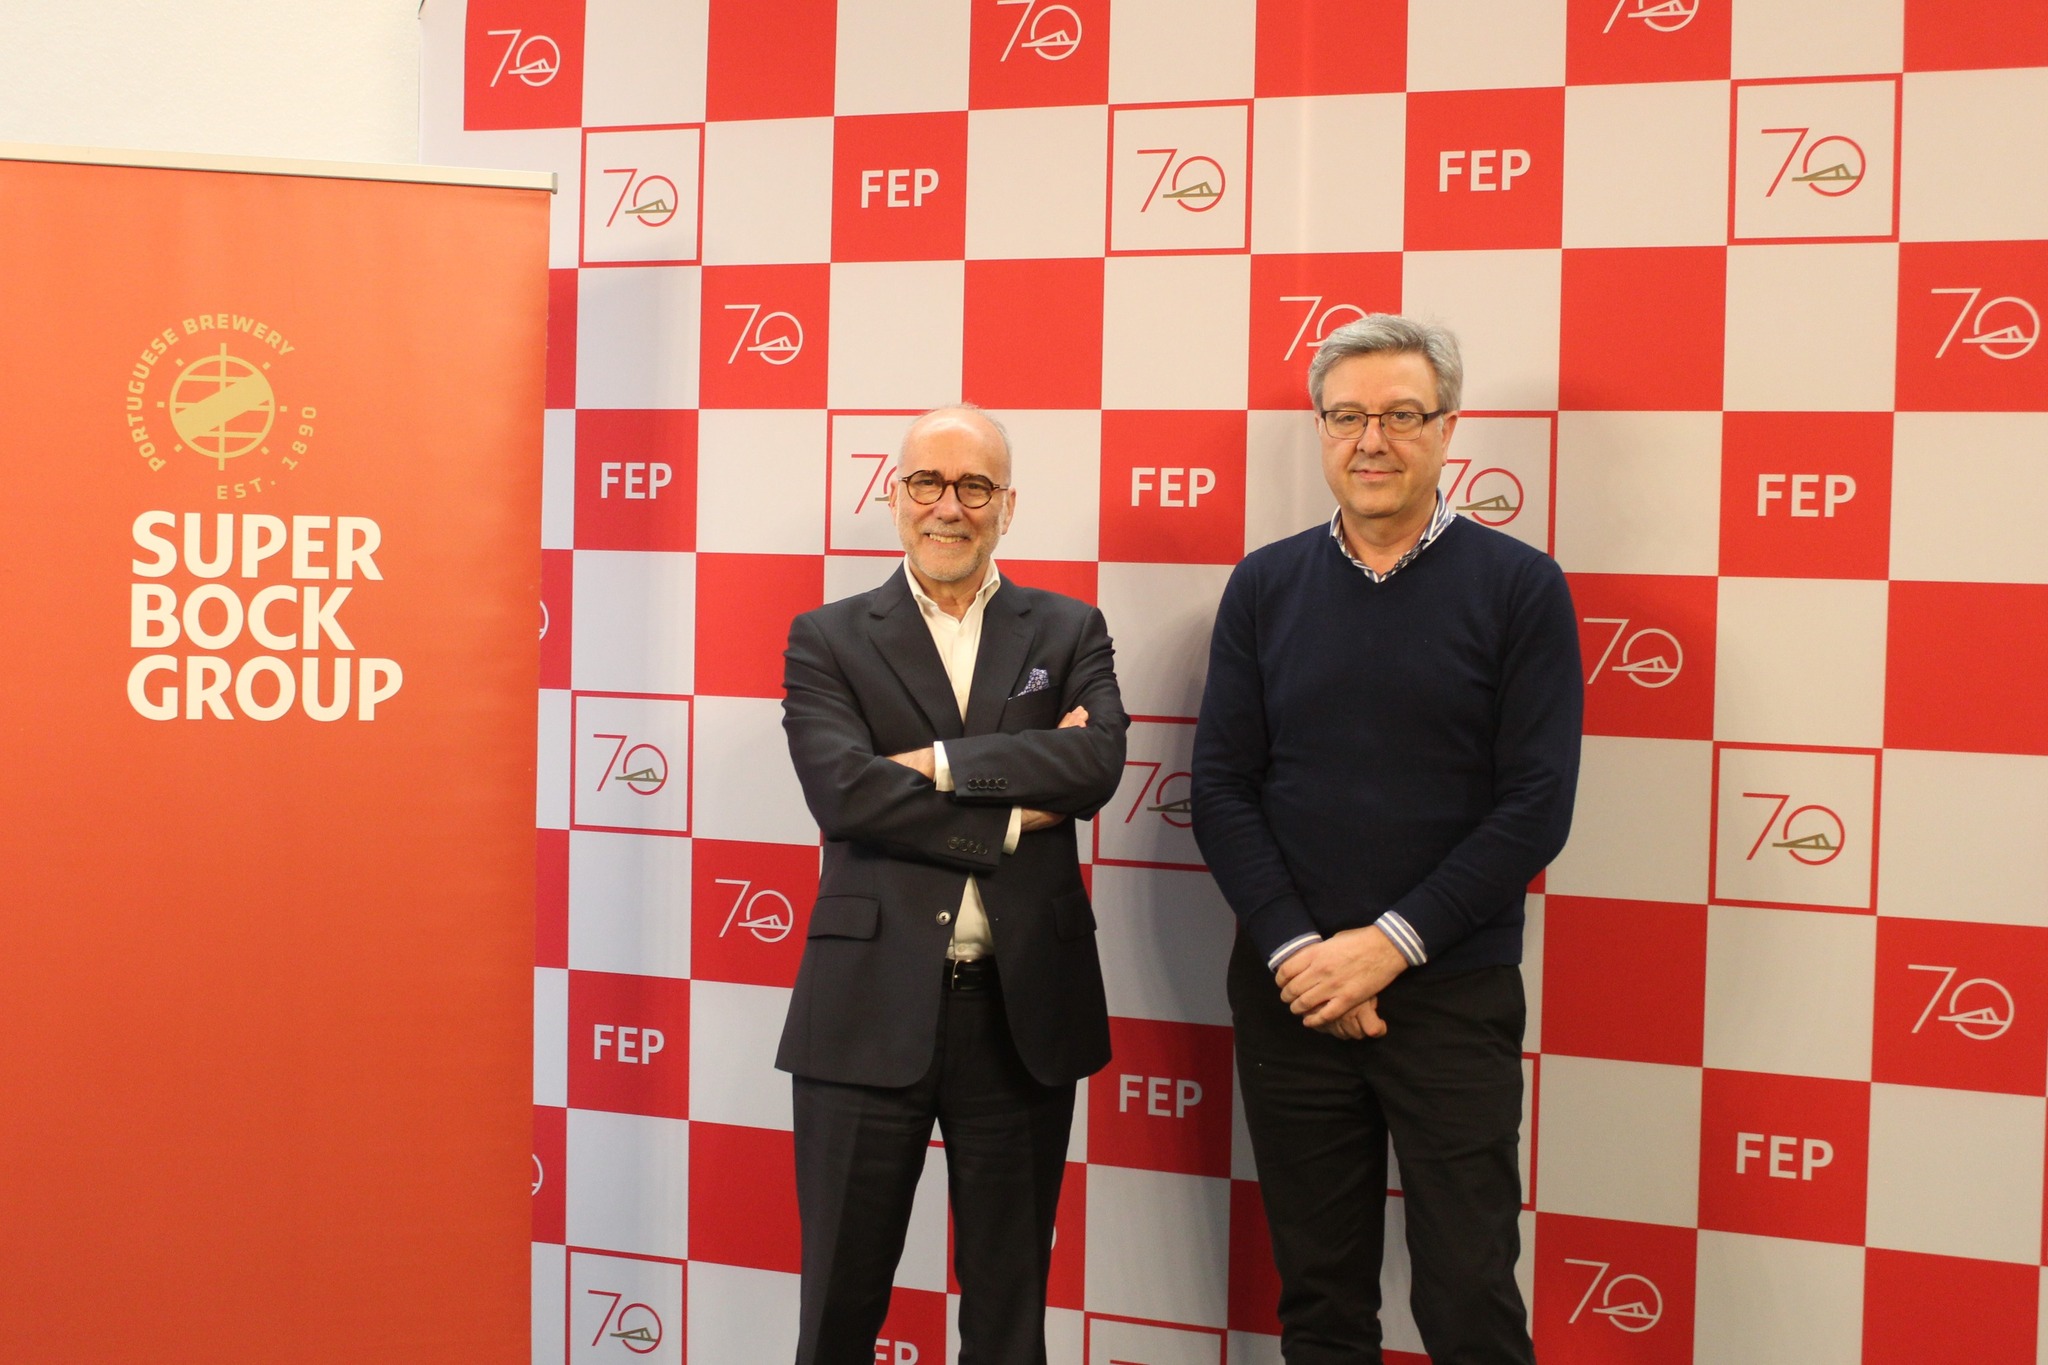 FEP e Super Bock Group promovem a excelência na produção científica